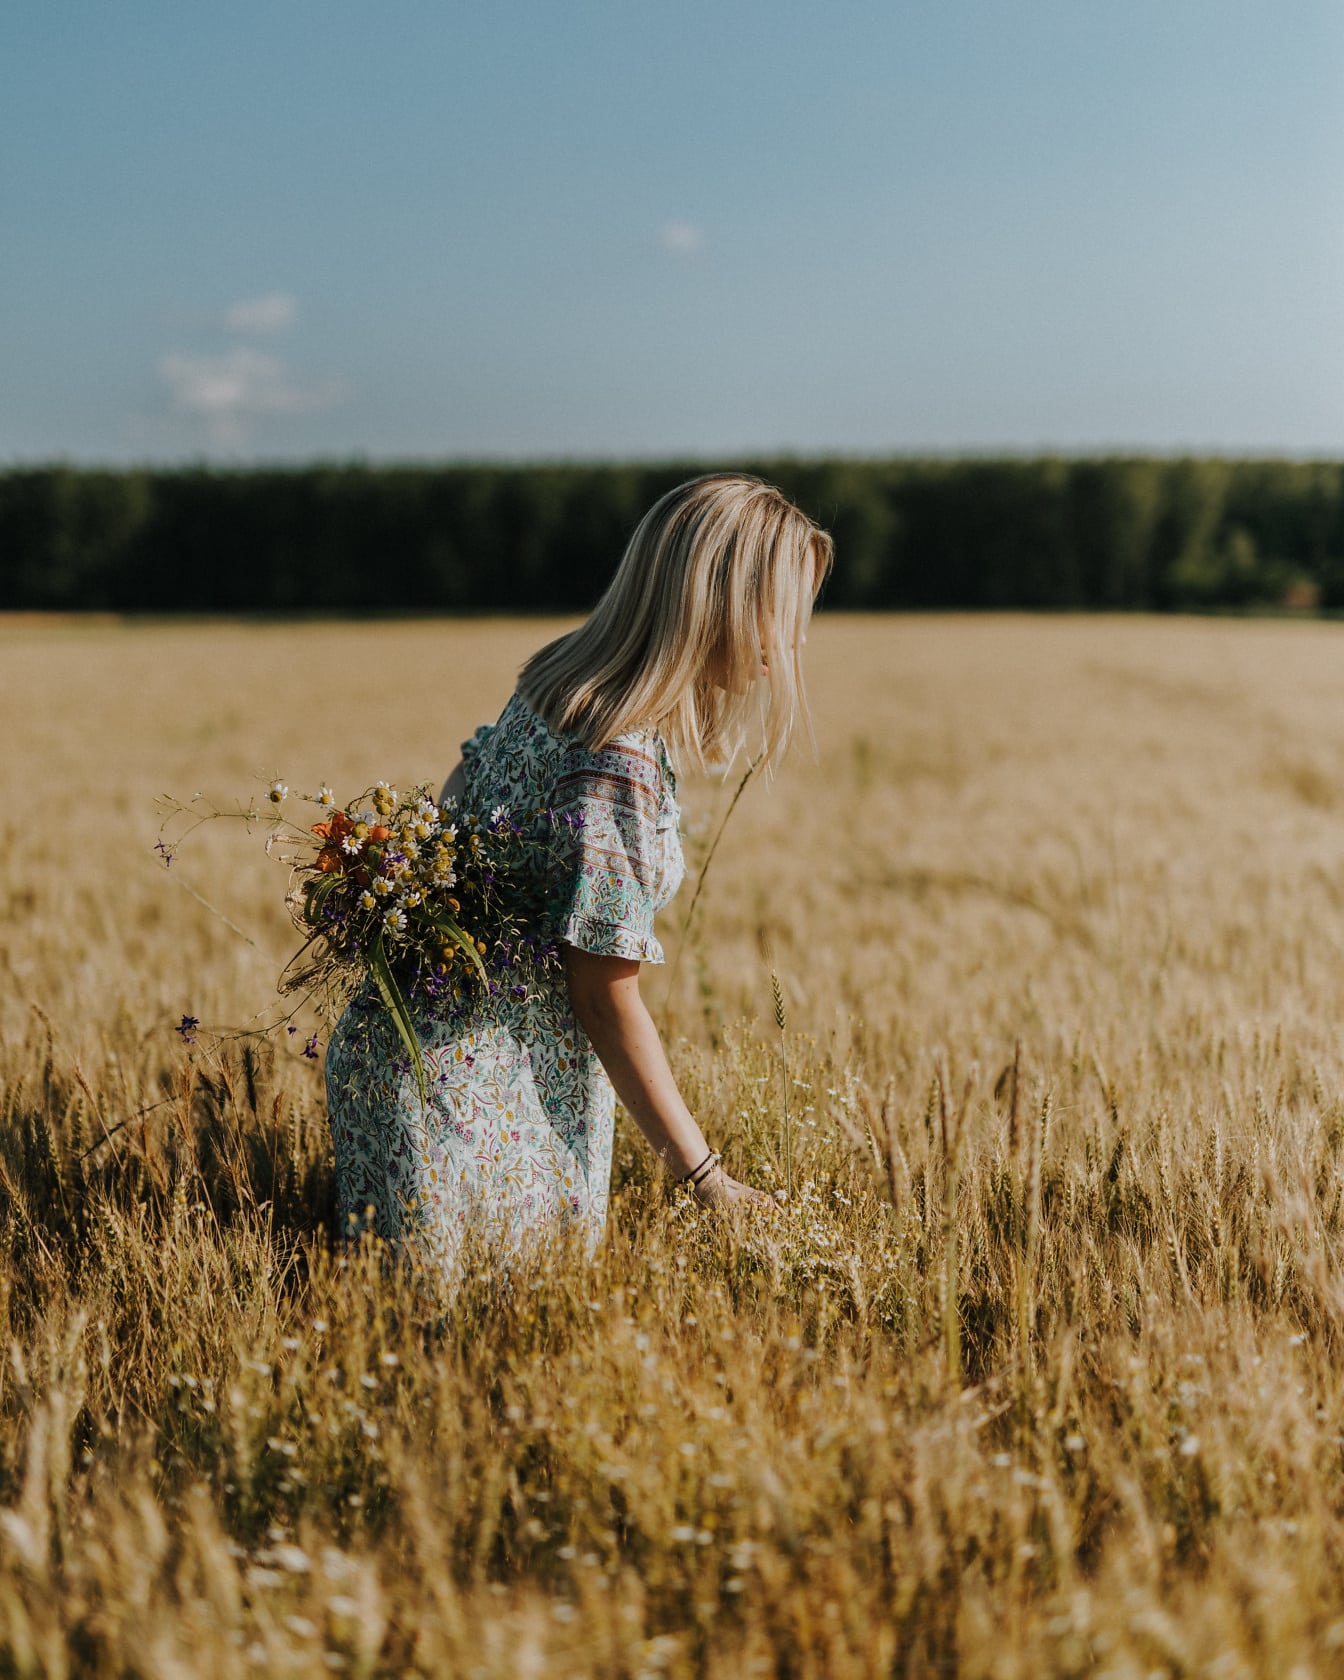 Tânără femeie de la țară ținând un buchet de flori într-un lan de grâu